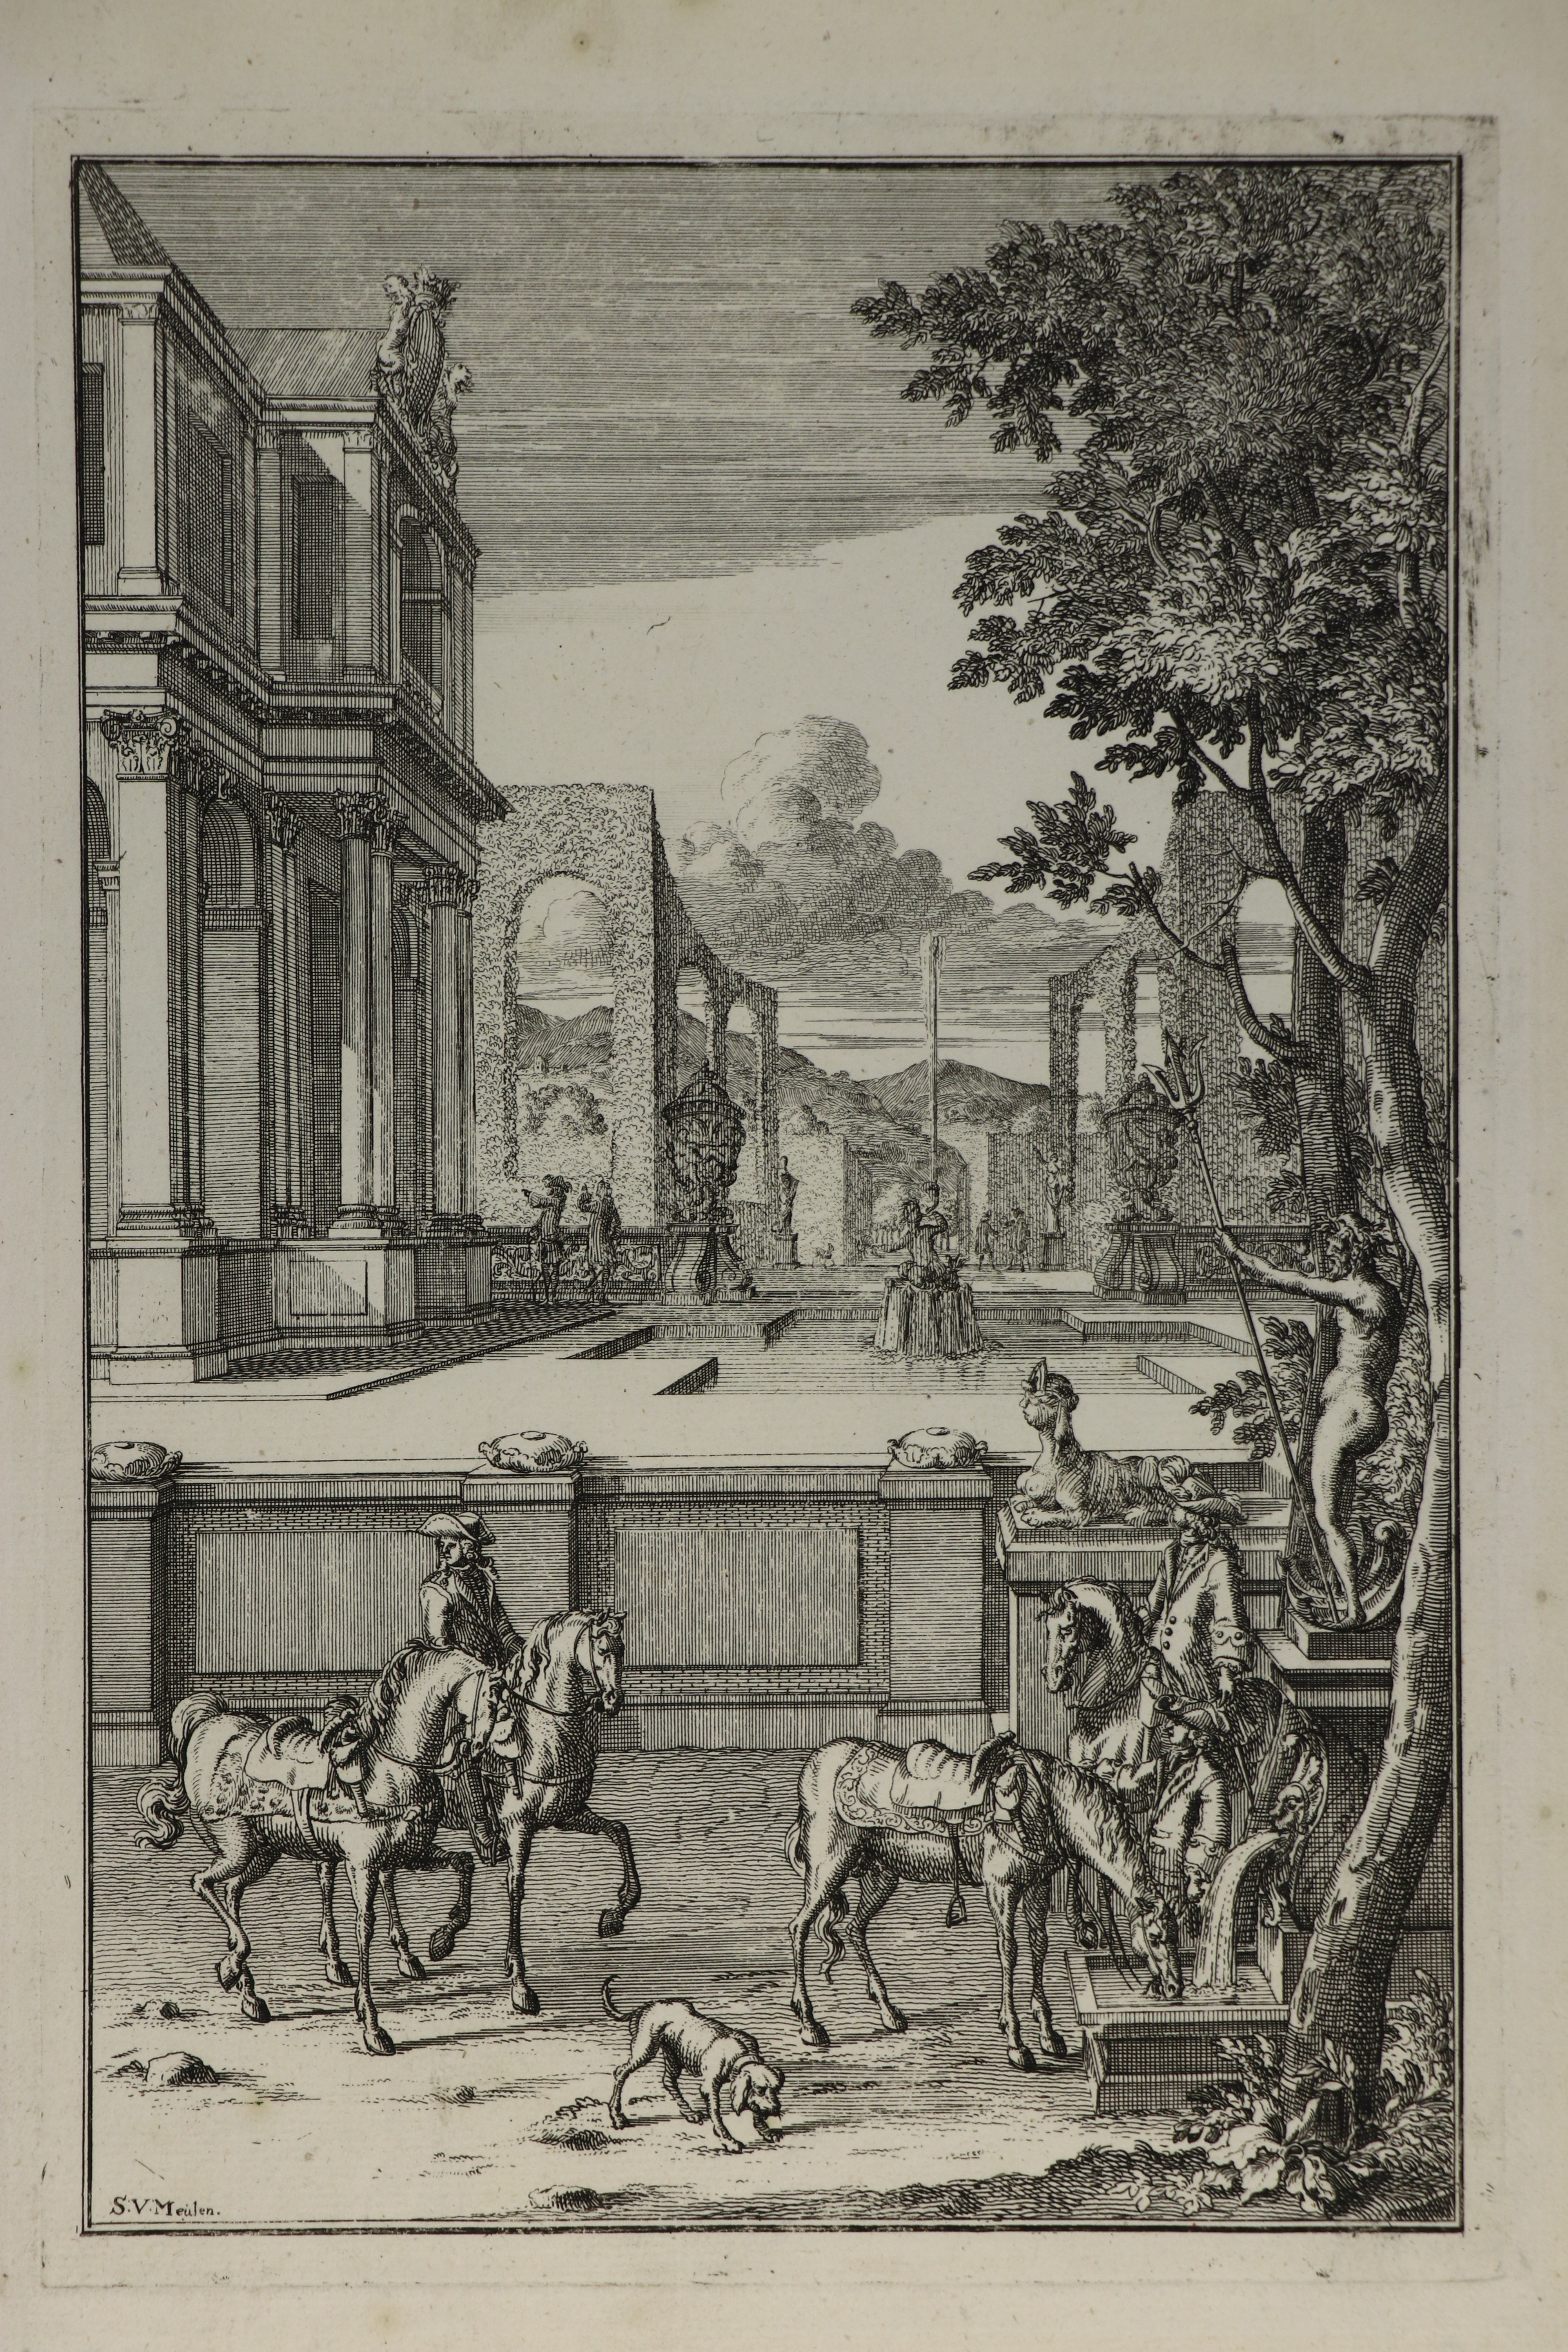 Reiter bei der Rast, van der Meulen, 1707 (Städtisches Museum Schloss Rheydt CC BY)